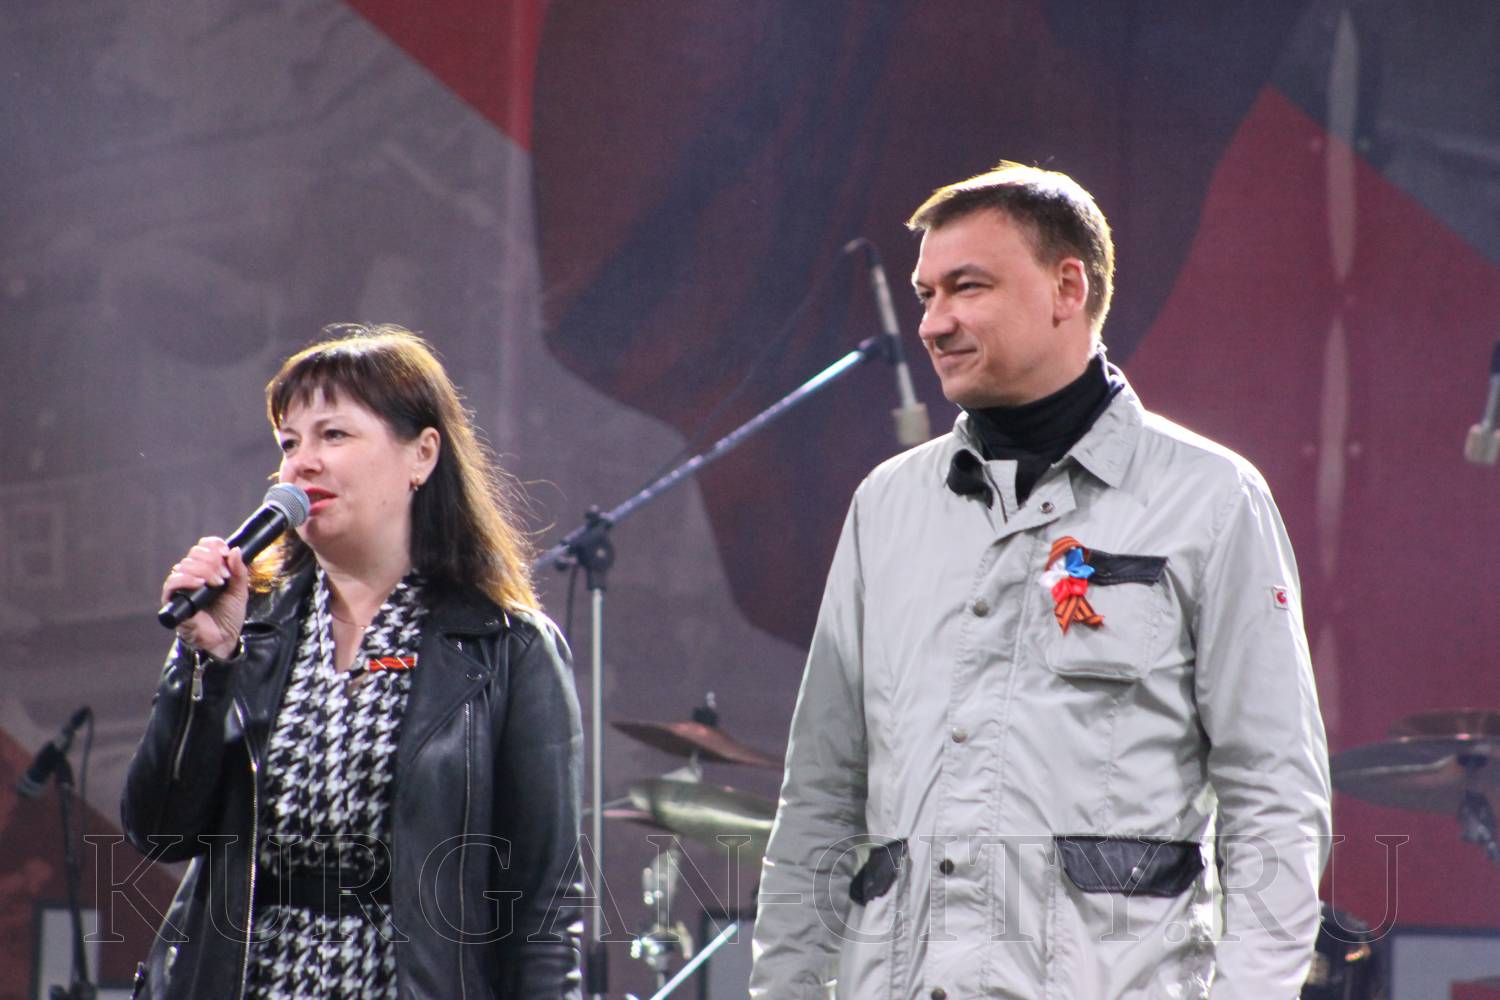 Курганцев поздравила с Днем Победы московская фолк-группа «Партизан FM».